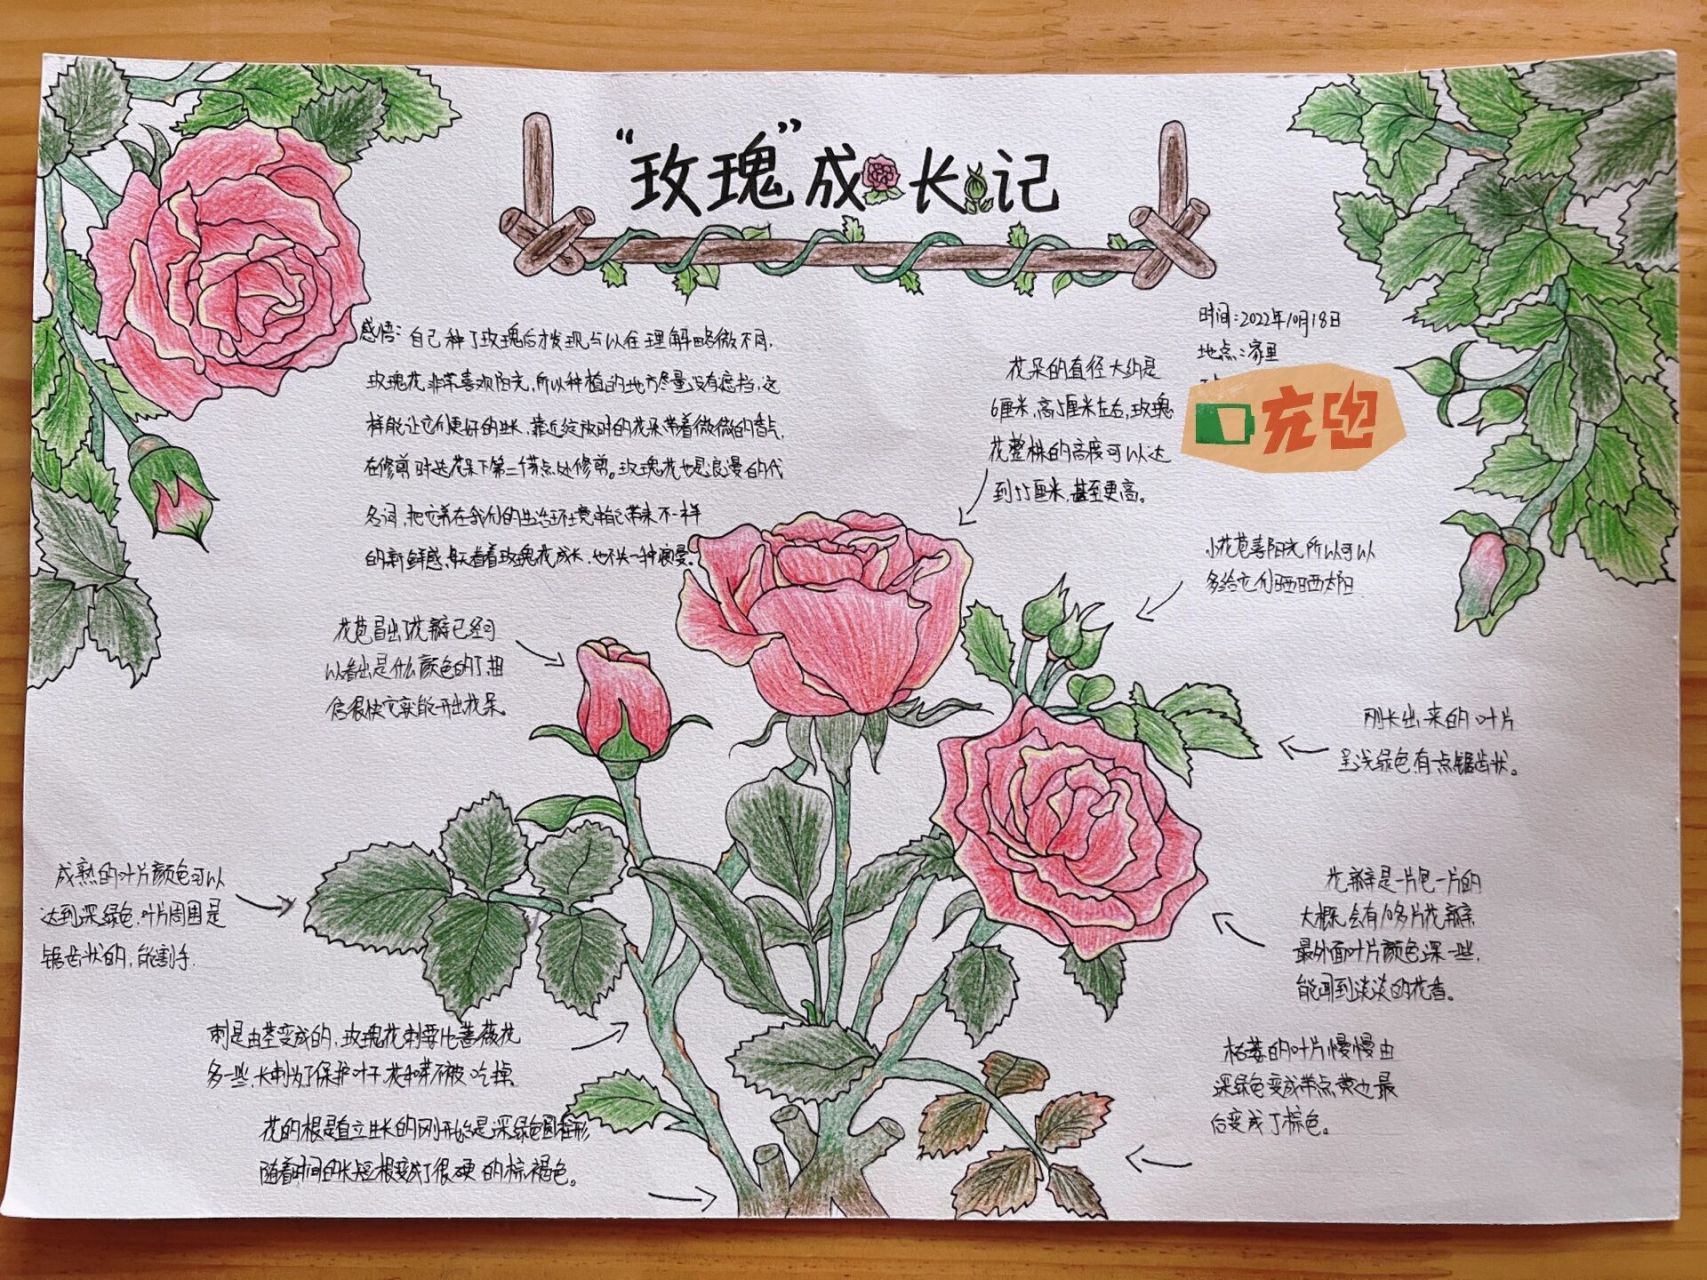 自然笔记 原创玫瑰花自然笔记